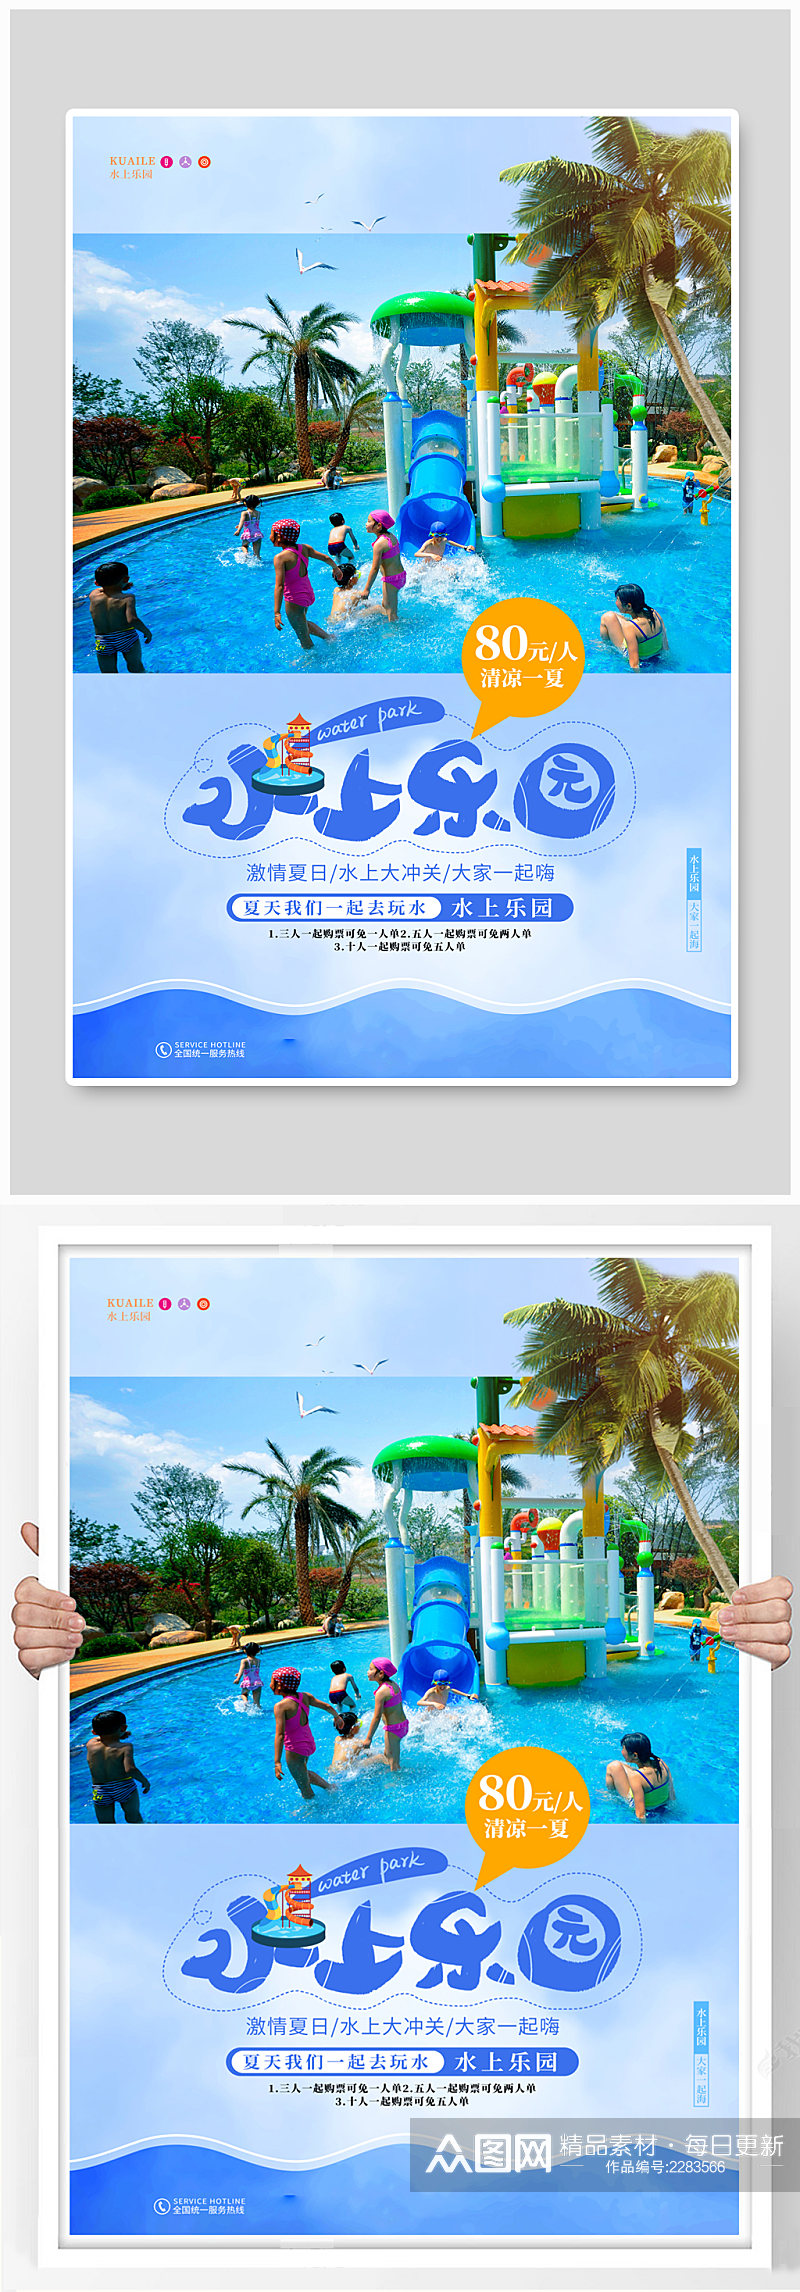 水上乐园水上嘉年华游乐场宣传促销海报素材